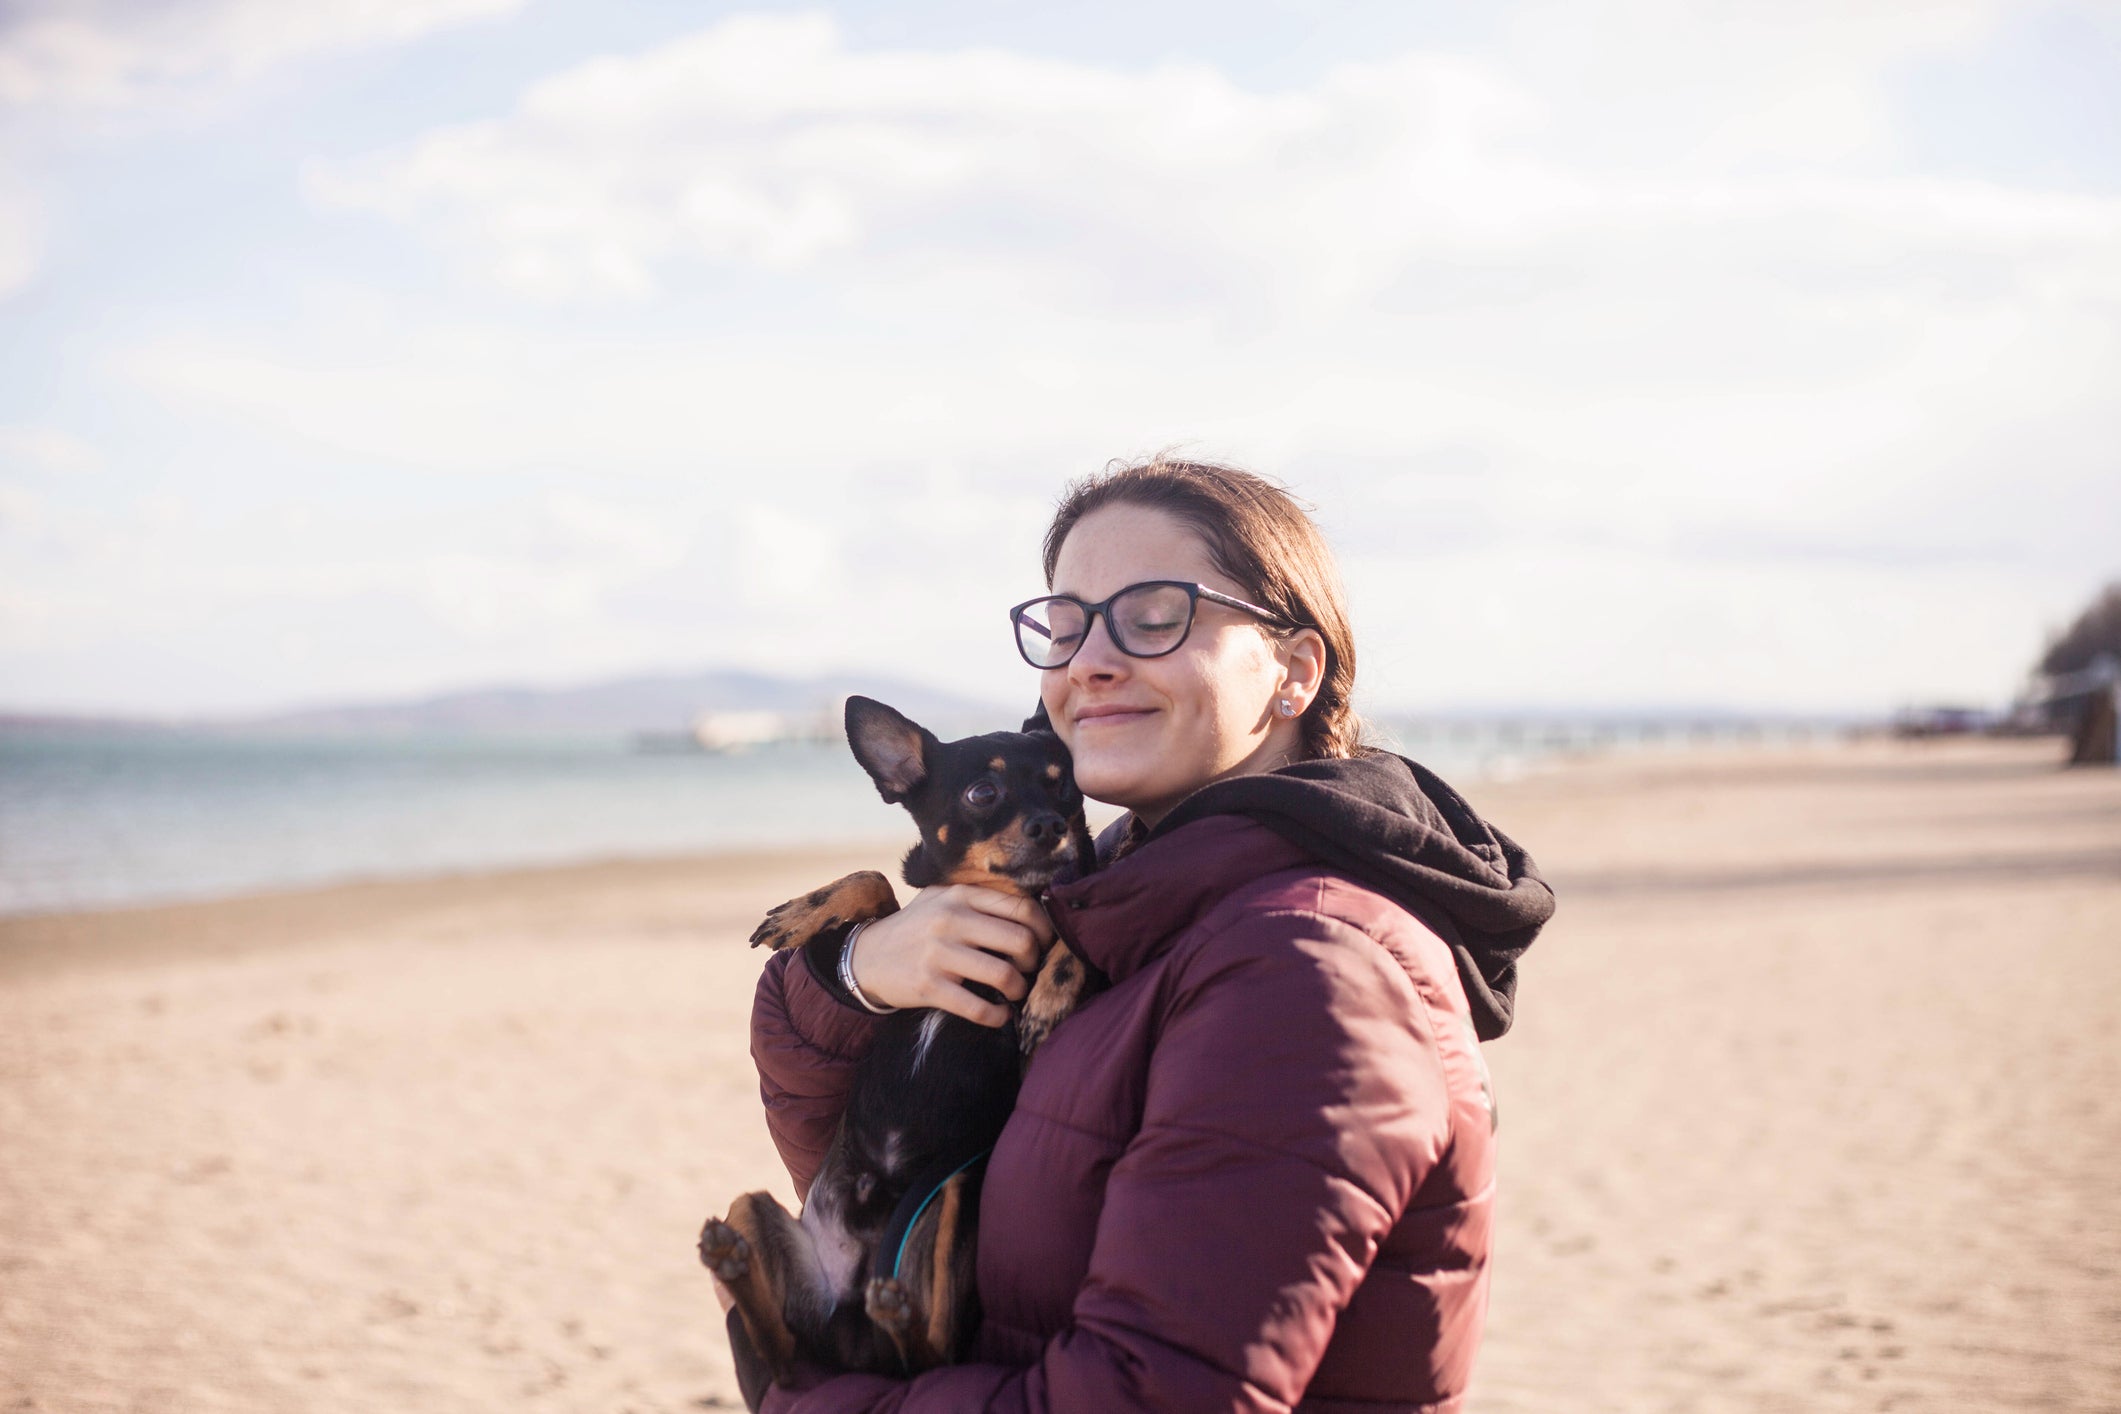 Tutora abraçando cão Pinscher em praia